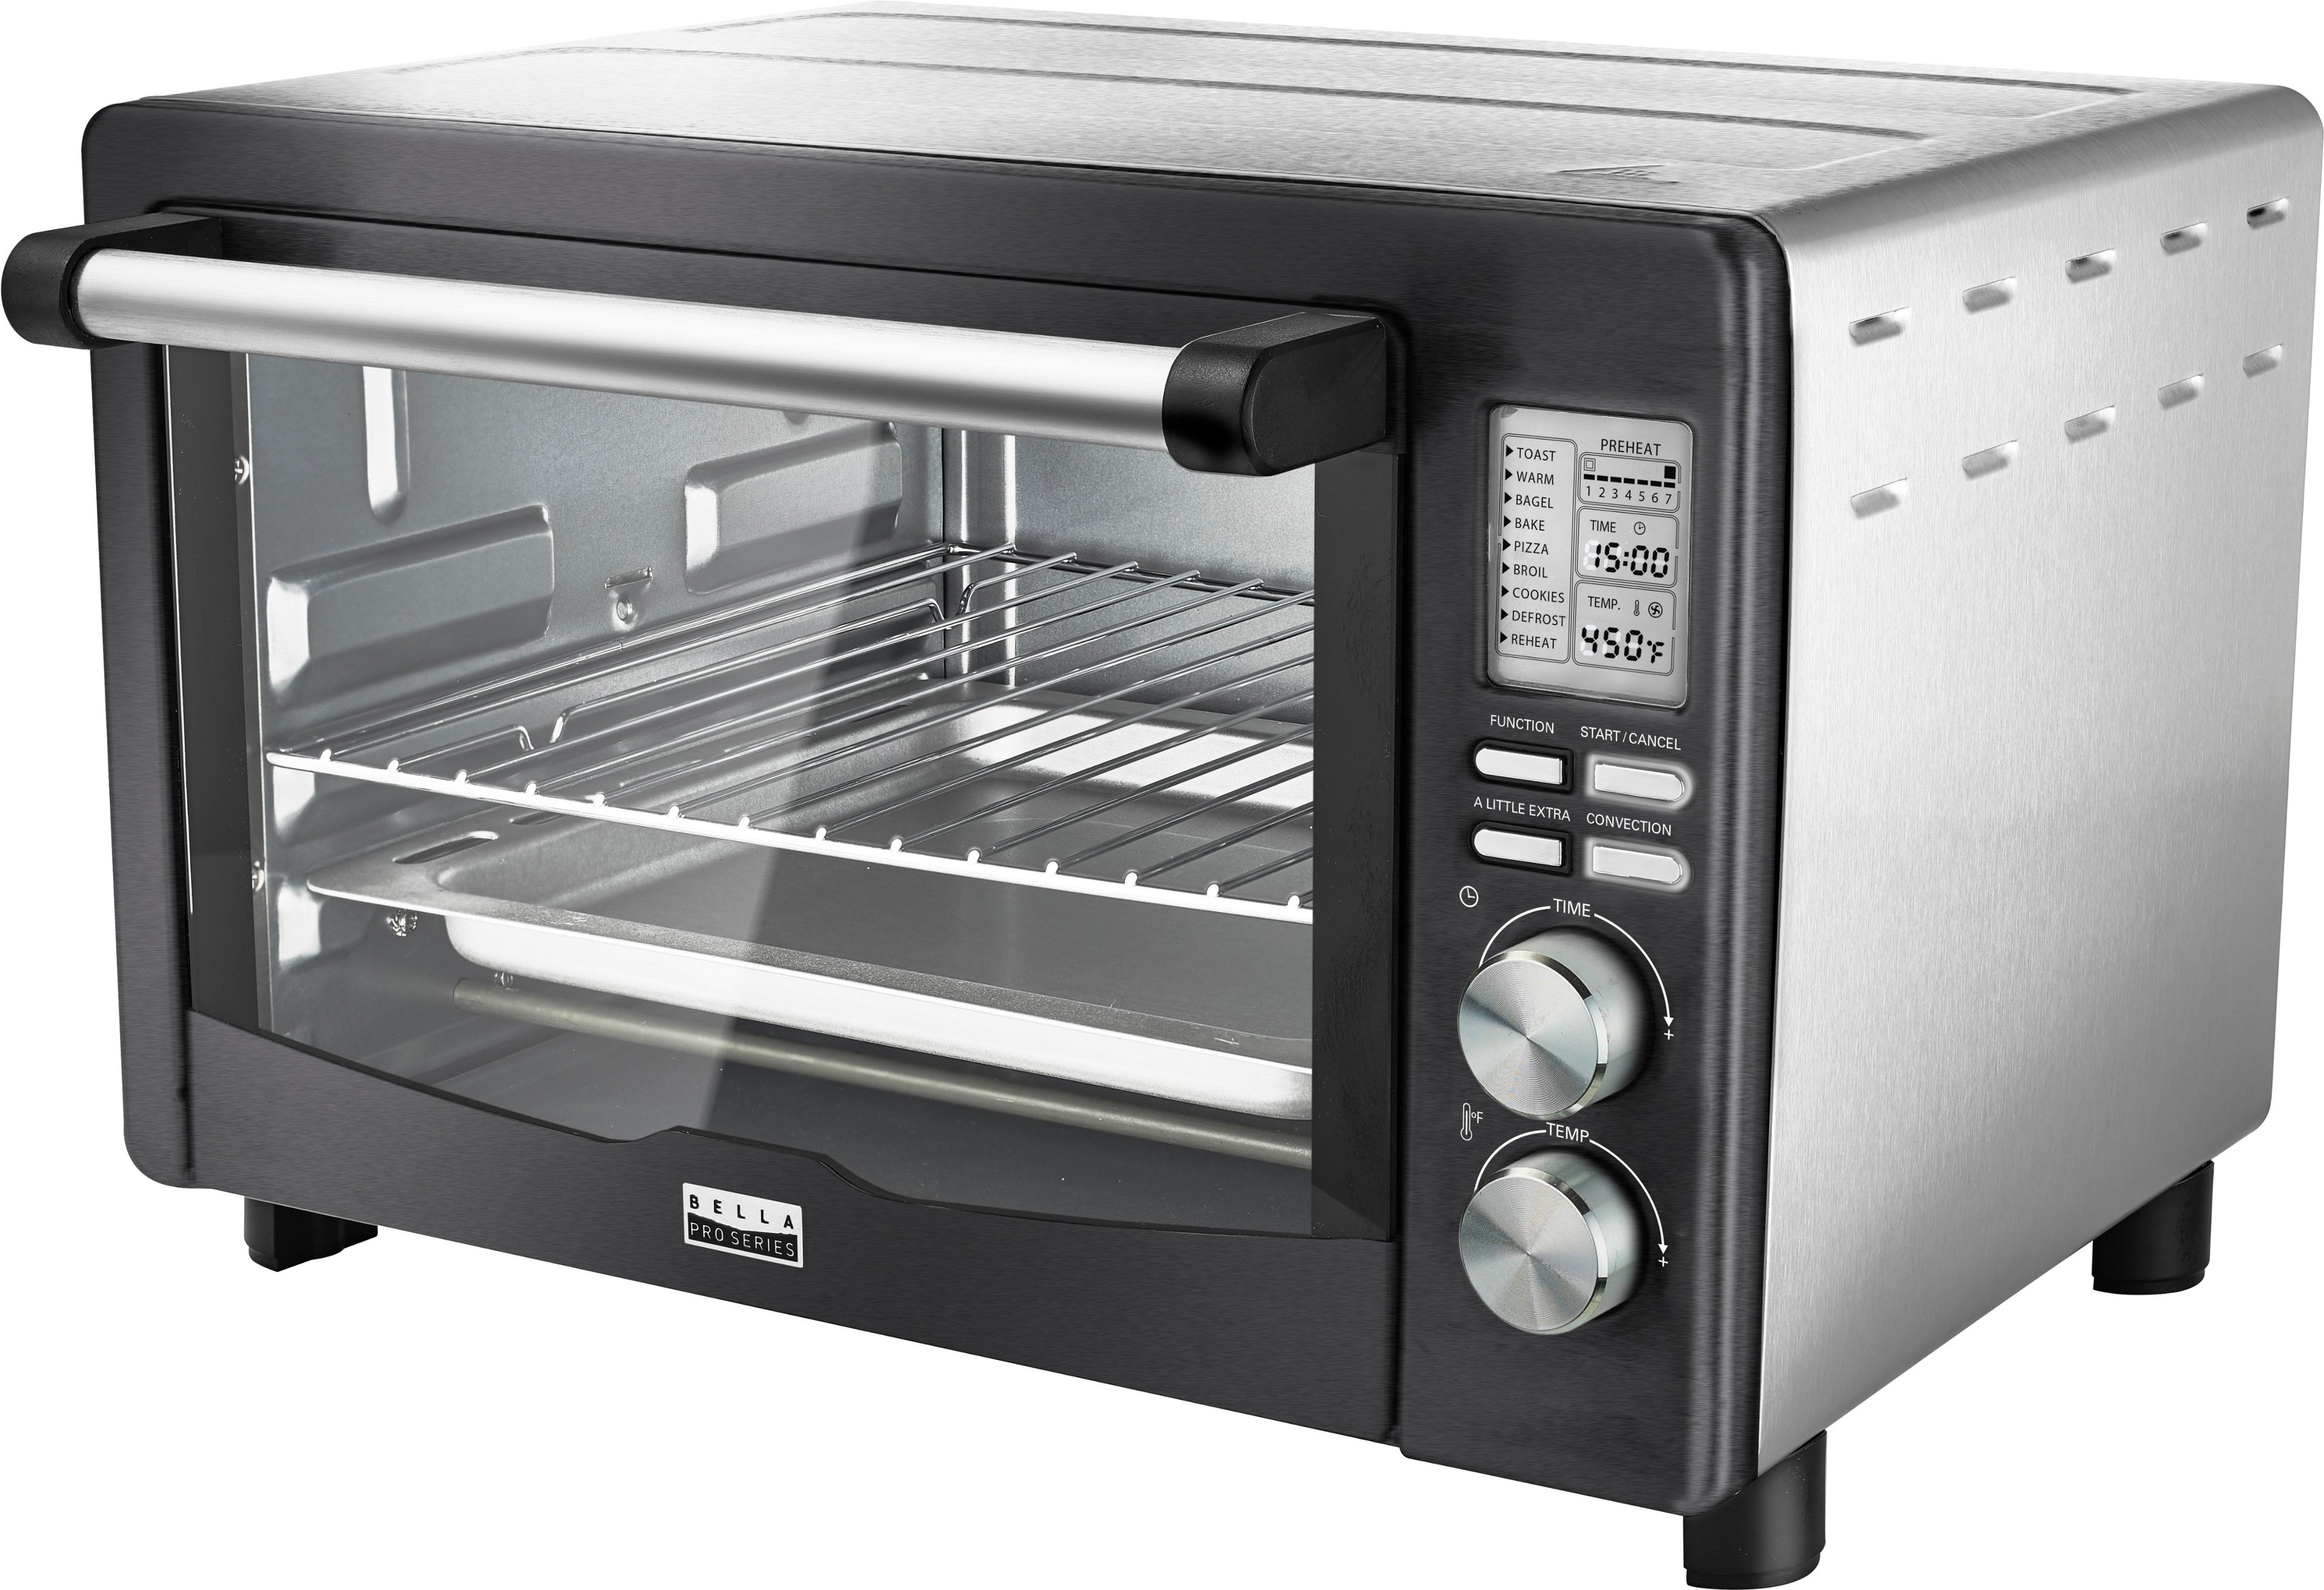 Best Buy: Bella Pro Series 6-Slice Toaster Oven Black stainless steel 90060 Toaster Oven Black Stainless Steel